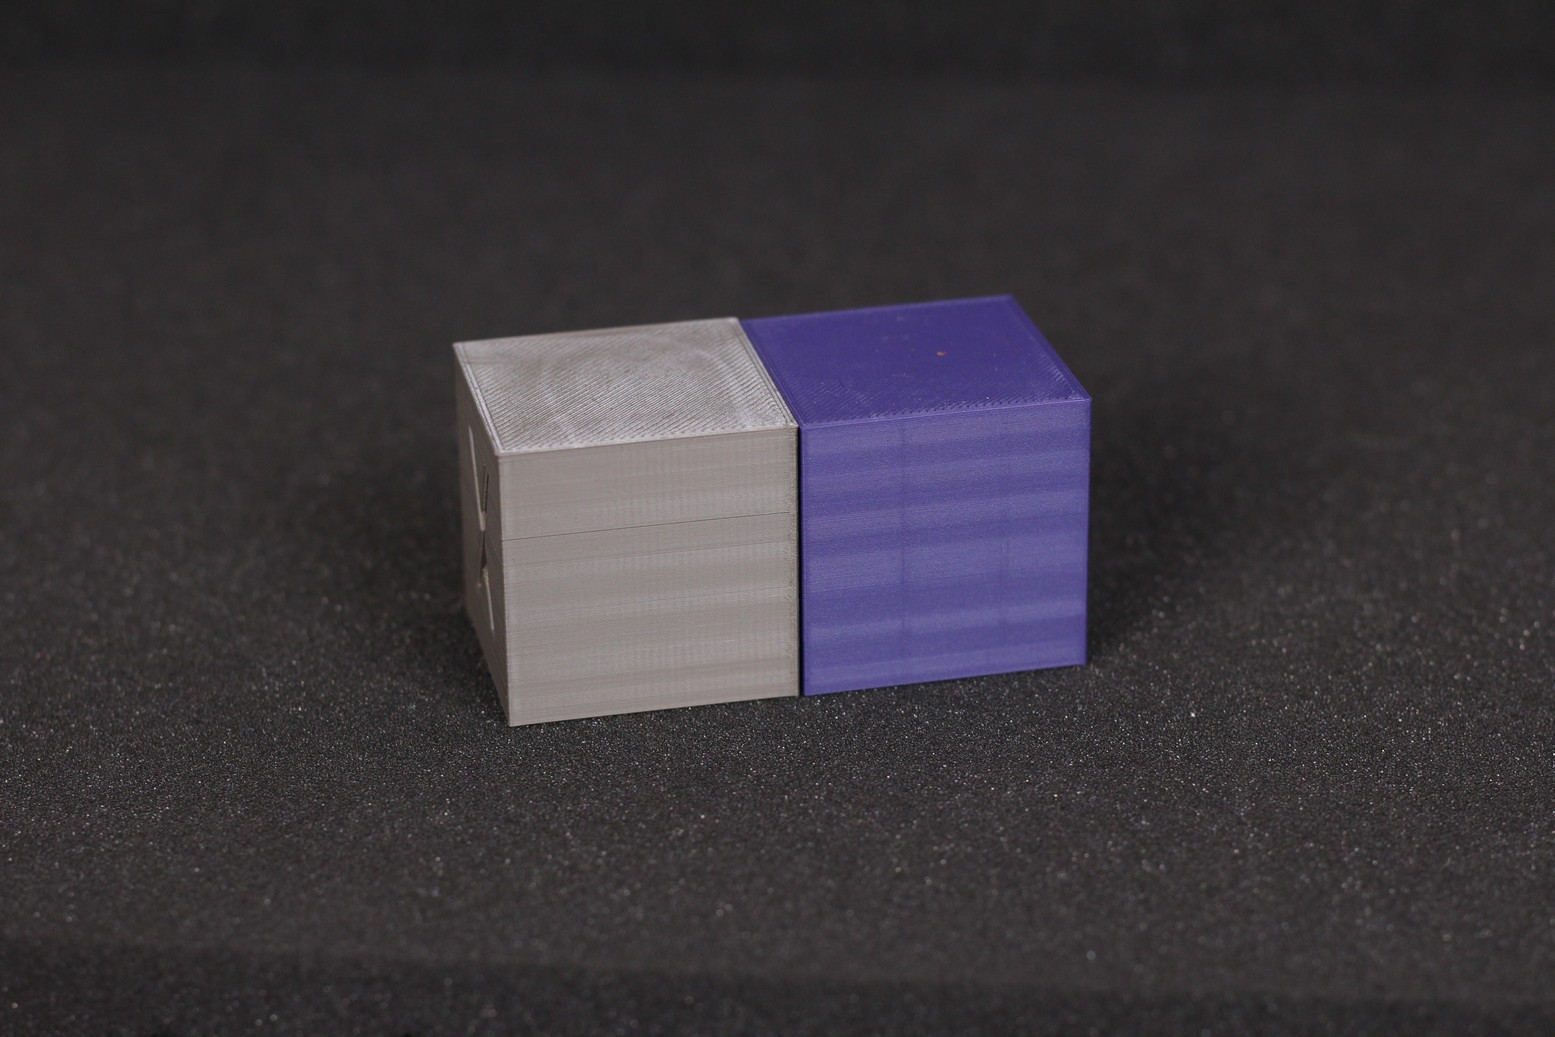 200 percent calibration cube QIDI X MAX Review 1 | QIDI X-MAX Review: Enclosed High-Temperature 3D Printer